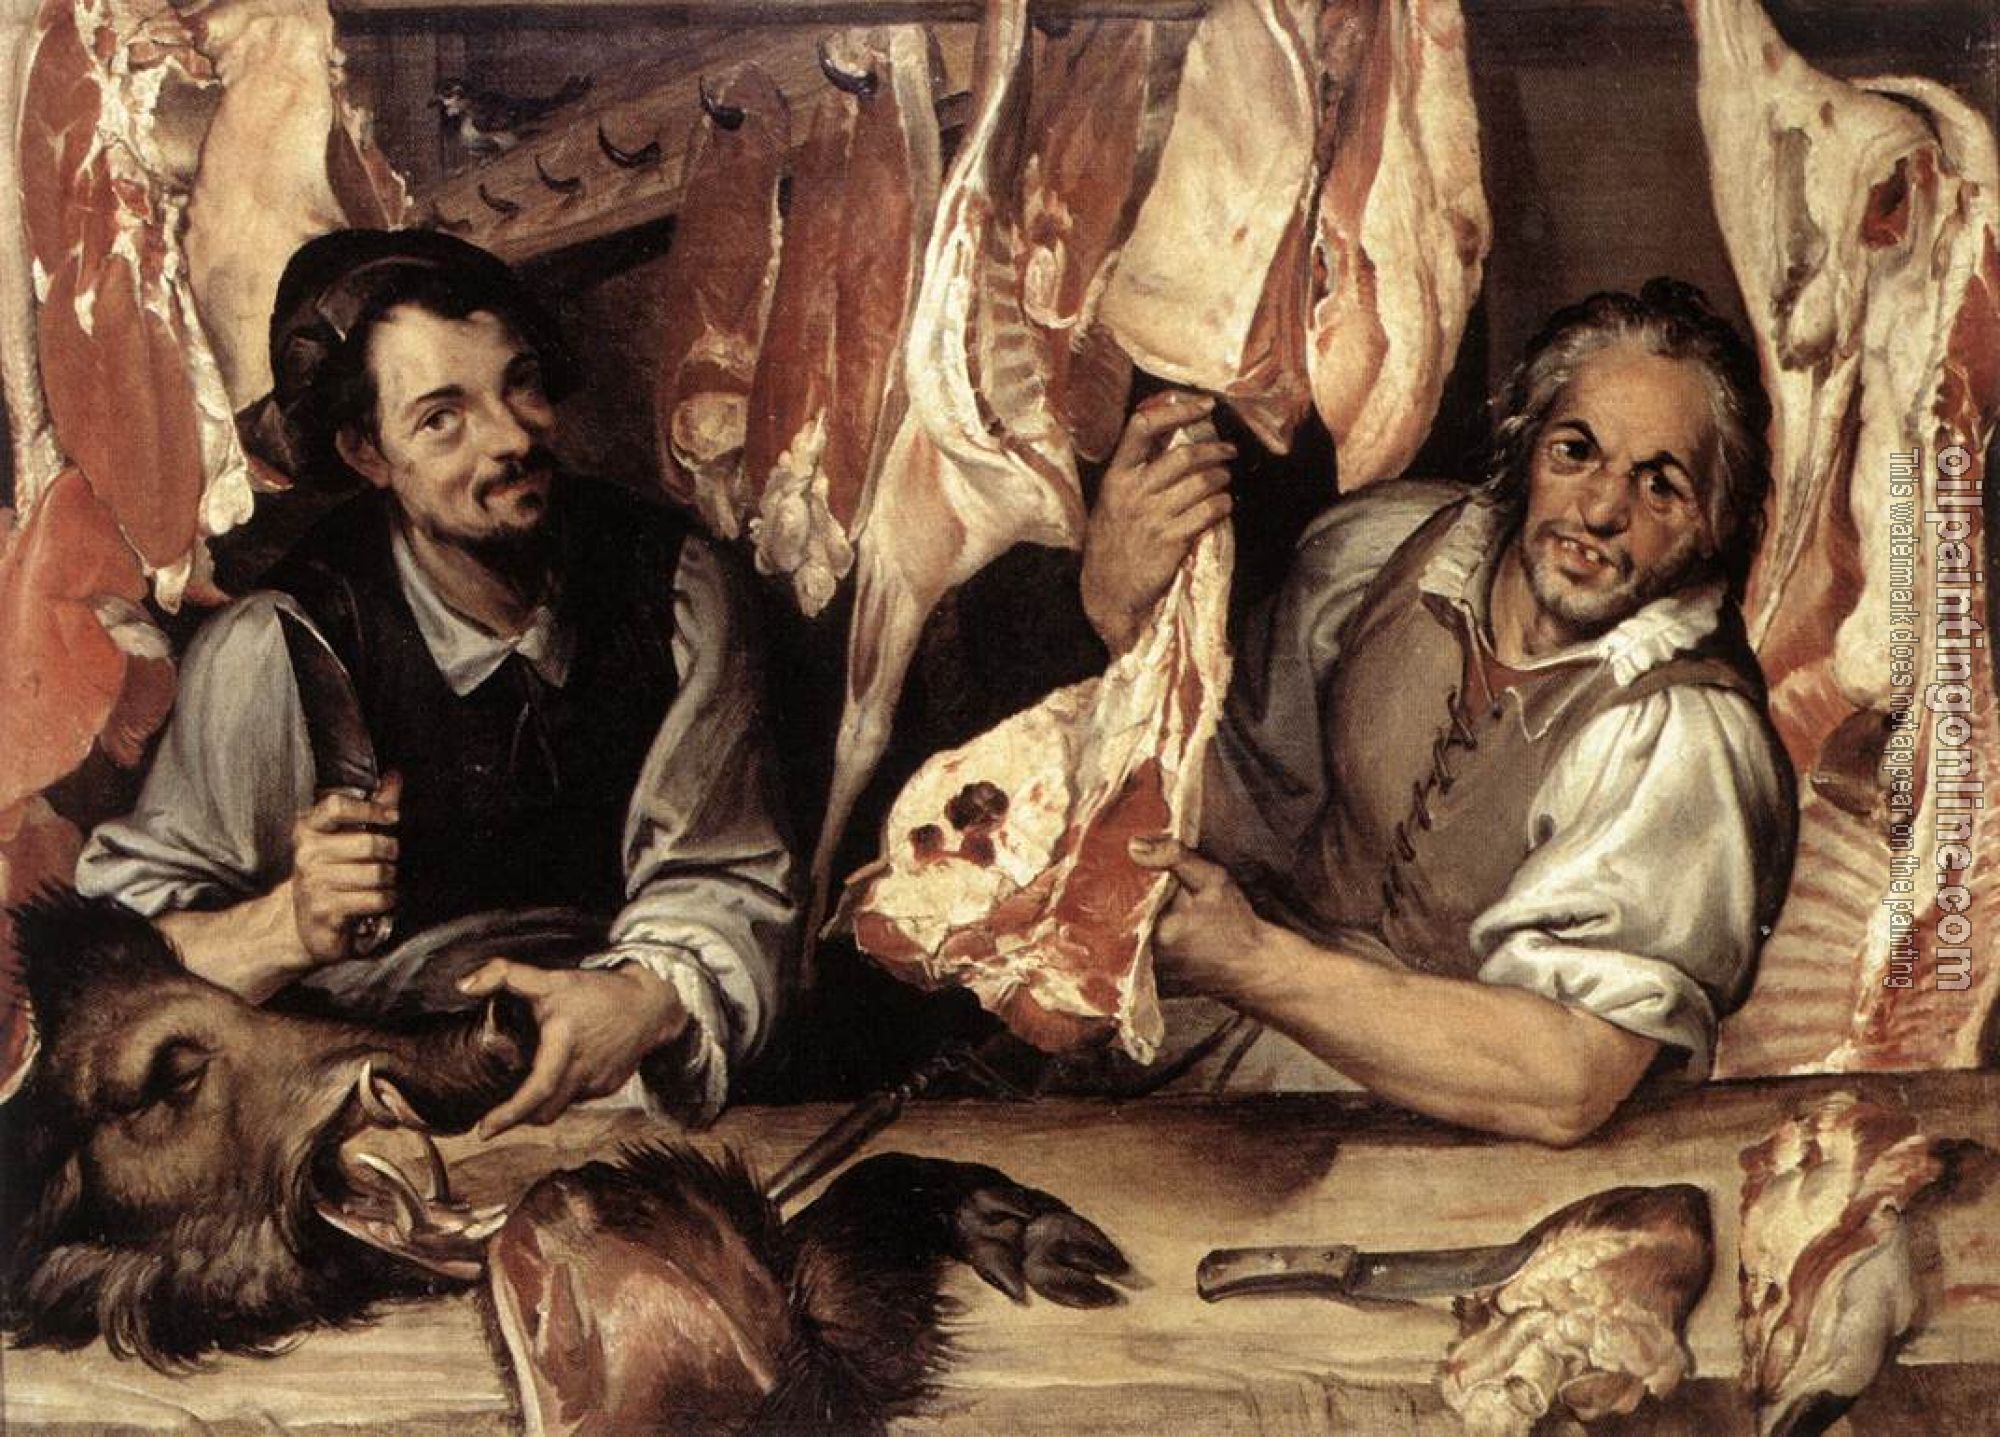 Passerotti, Bartolomeo - The Butcher's Shop